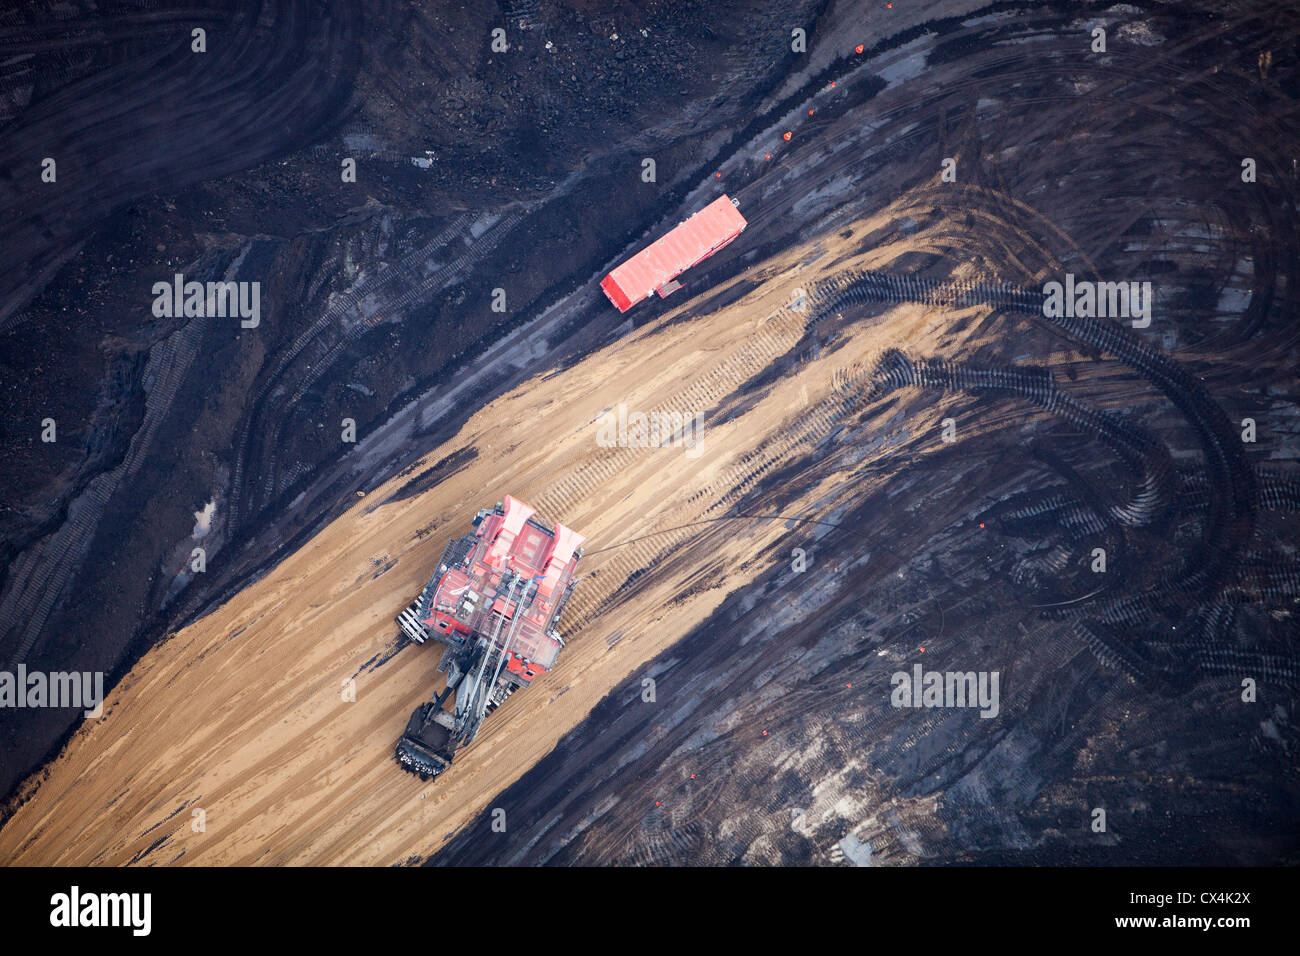 Les dépôts de sables bitumineux exploités à la mine Syncrude au nord de Fort McMurray, Alberta, Canada. Banque D'Images